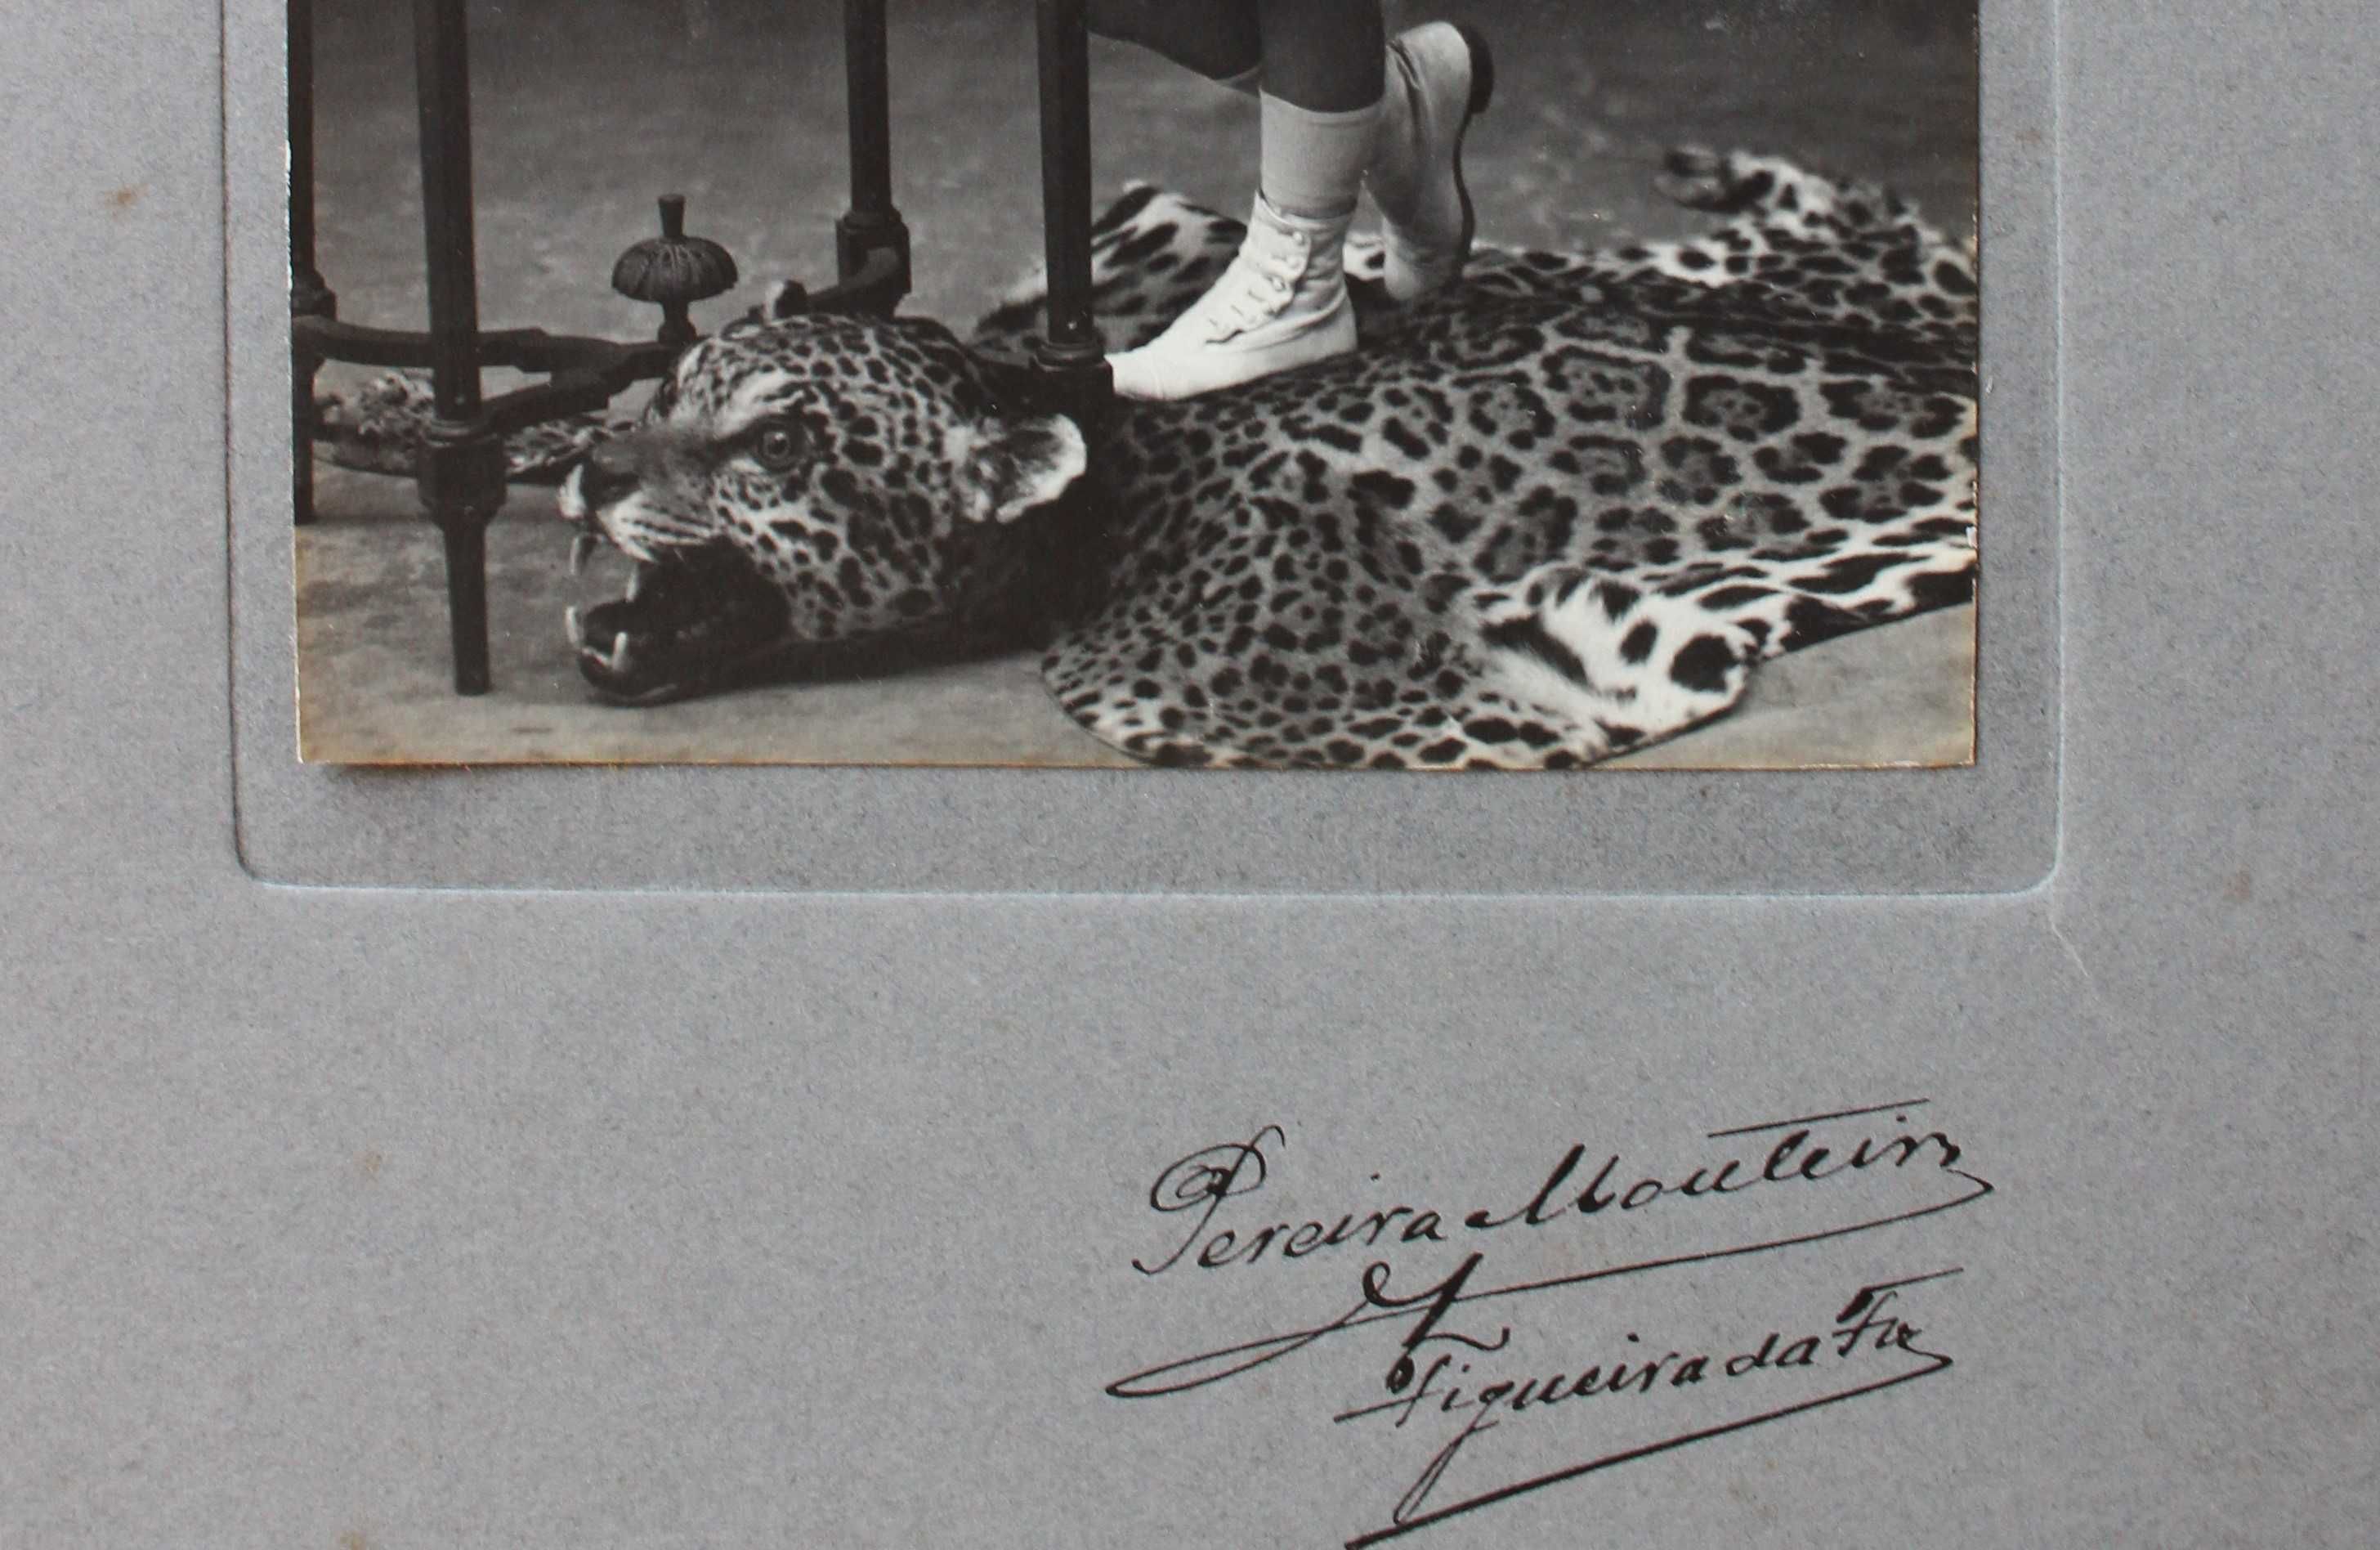 Figueira da Foz menina e leopardo 1914 foto Pereira Monteiro assinada